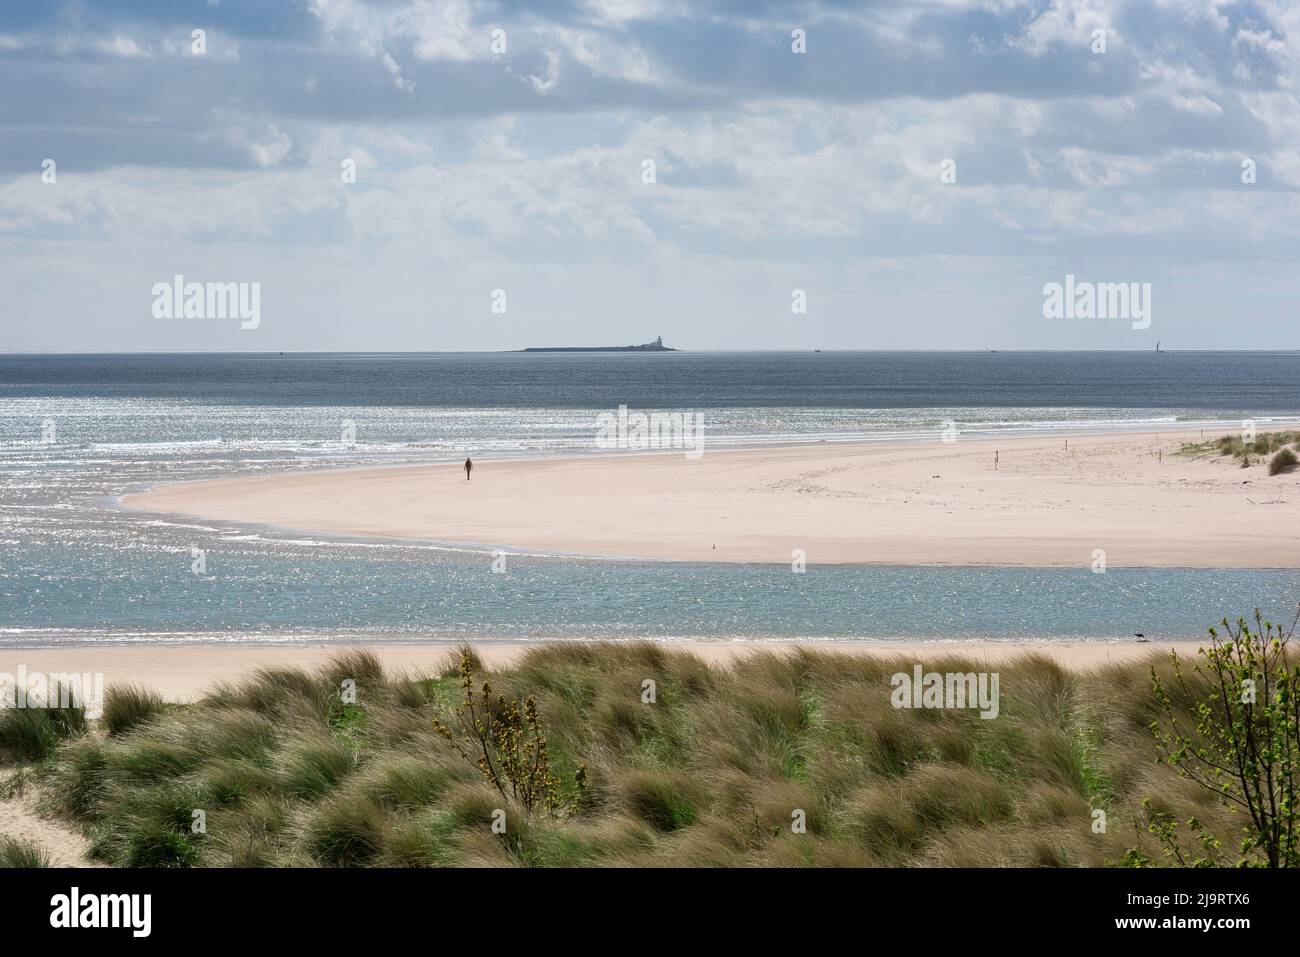 Côte de Northumberland, vue à la fin du printemps des dunes et de la plage de sable blanc dans la baie d'Alnmouth sur la côte de Northumberland, Alnmouth, Angleterre, Royaume-Uni Banque D'Images